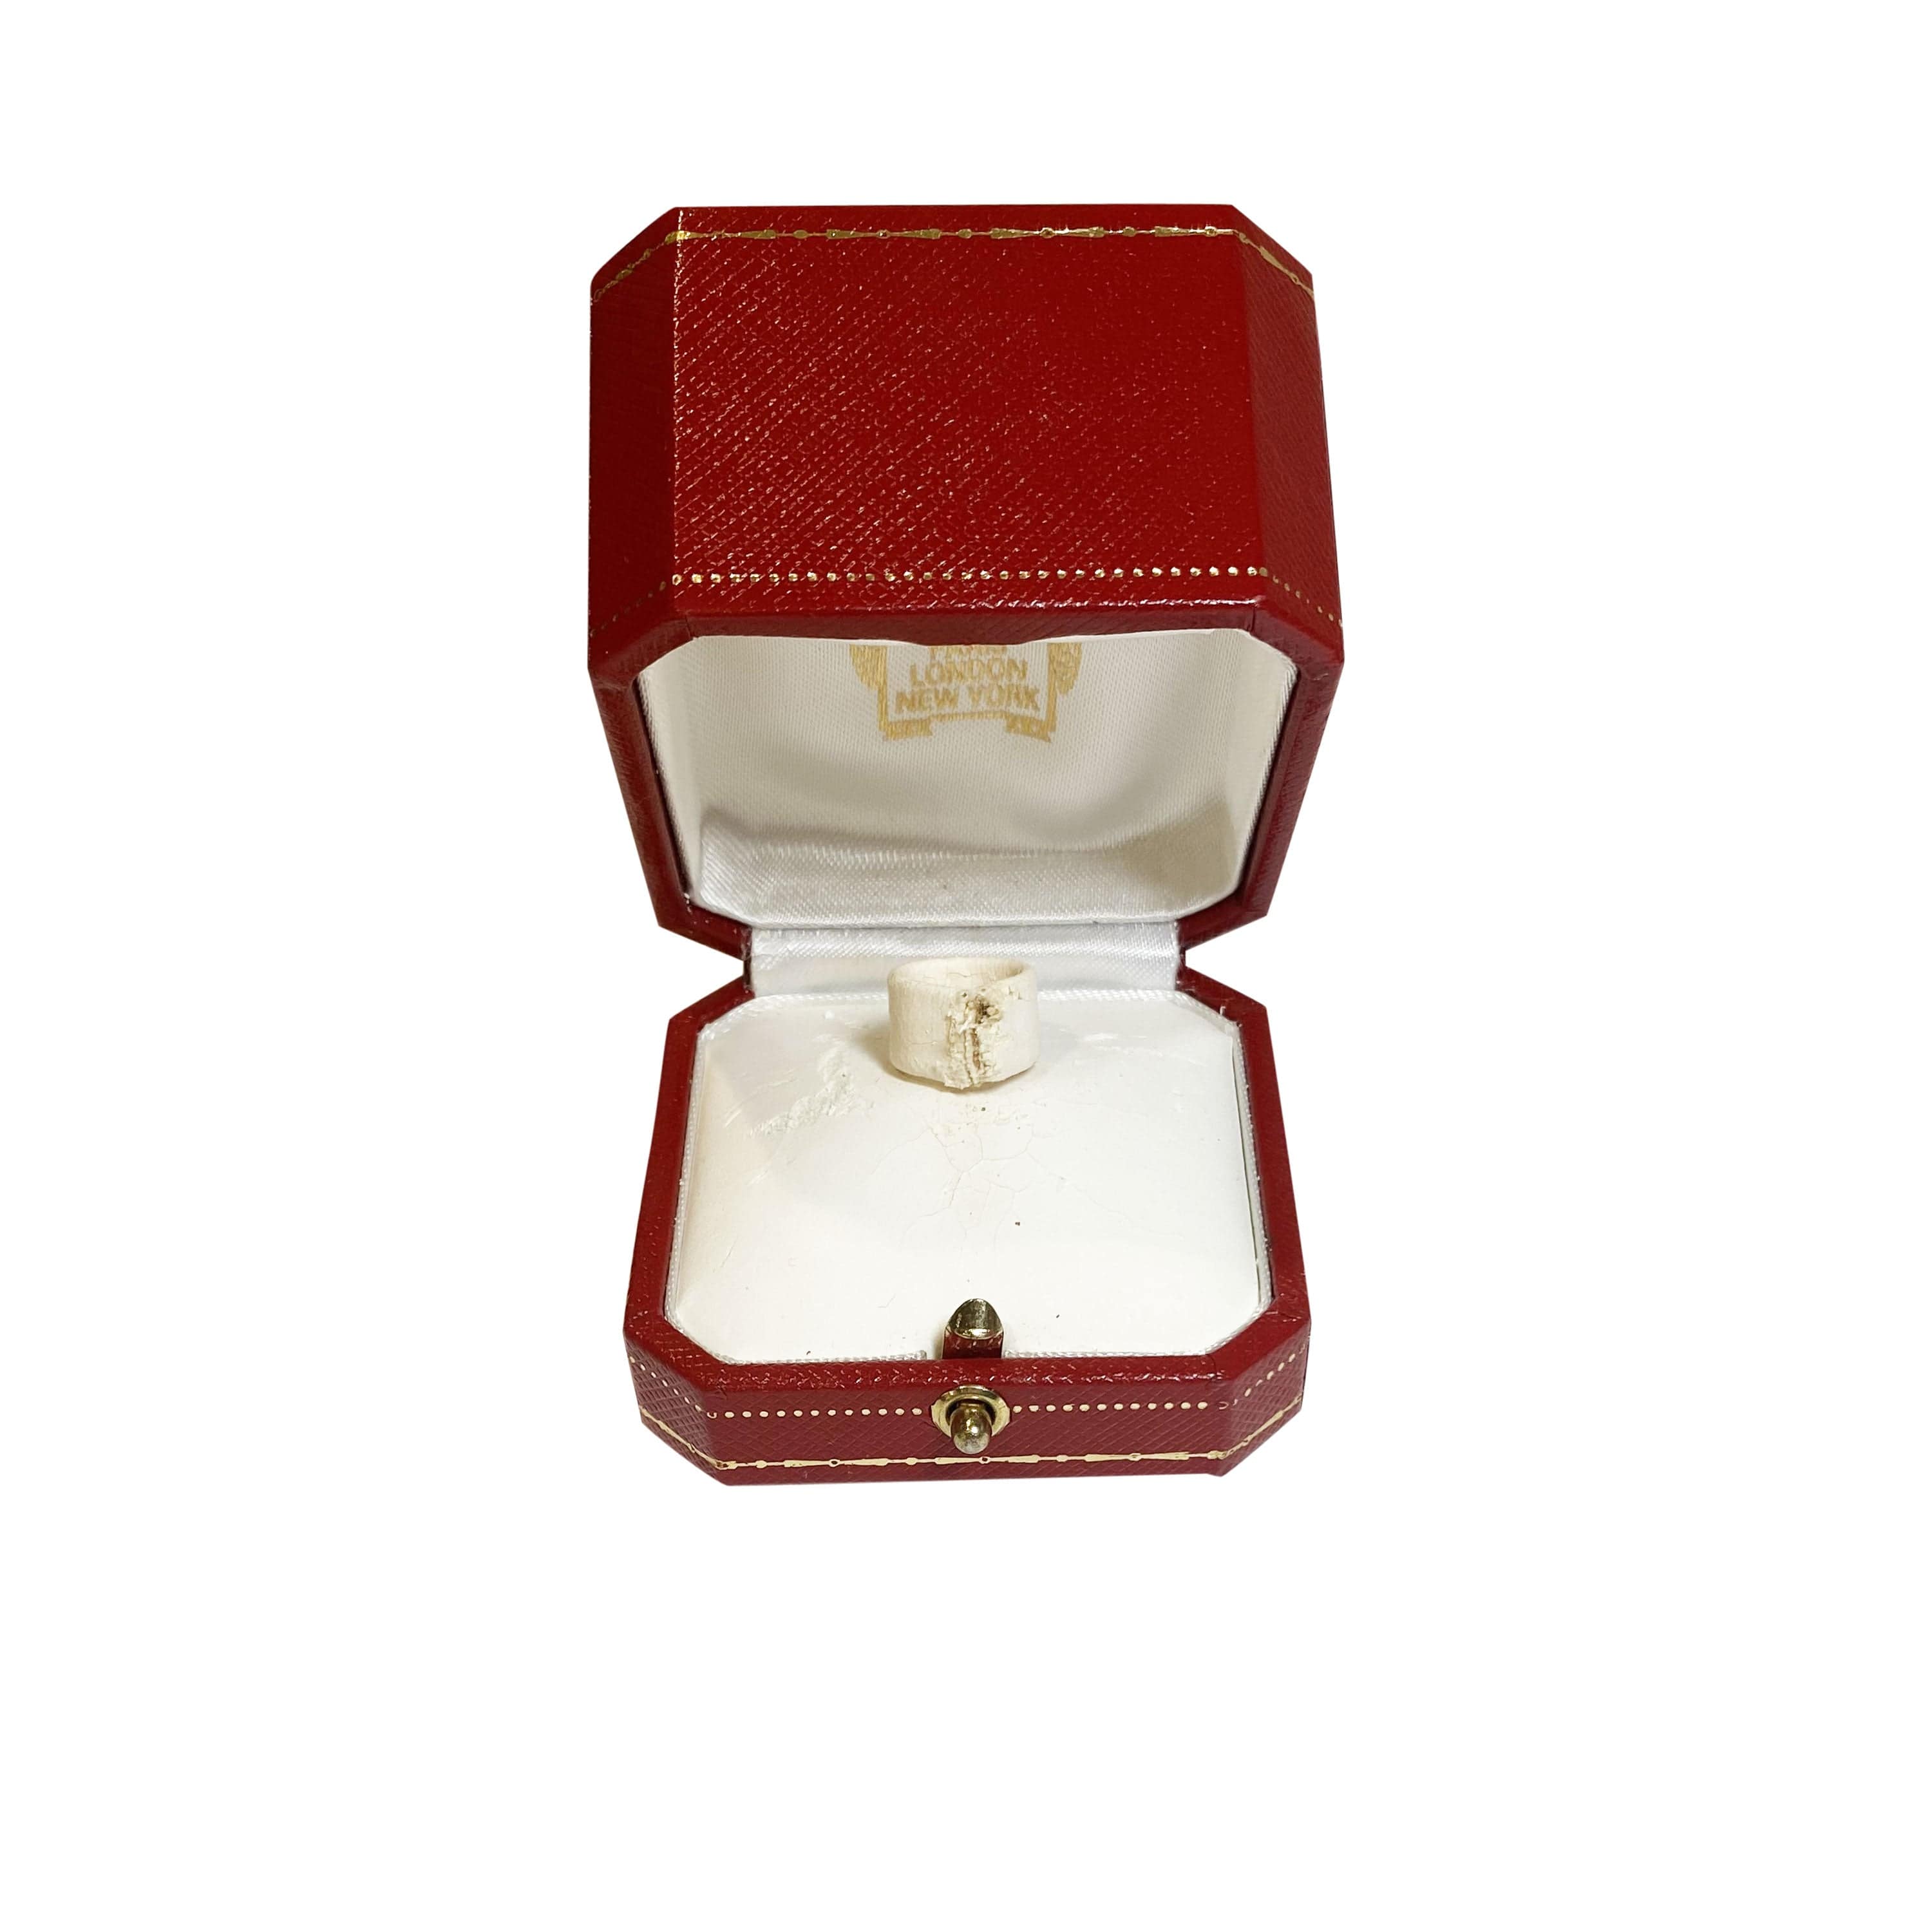 Cartier Cartier Lanières Diamond Ring in 18k White Gold DEF VVS1VVS2 0.05 CTW